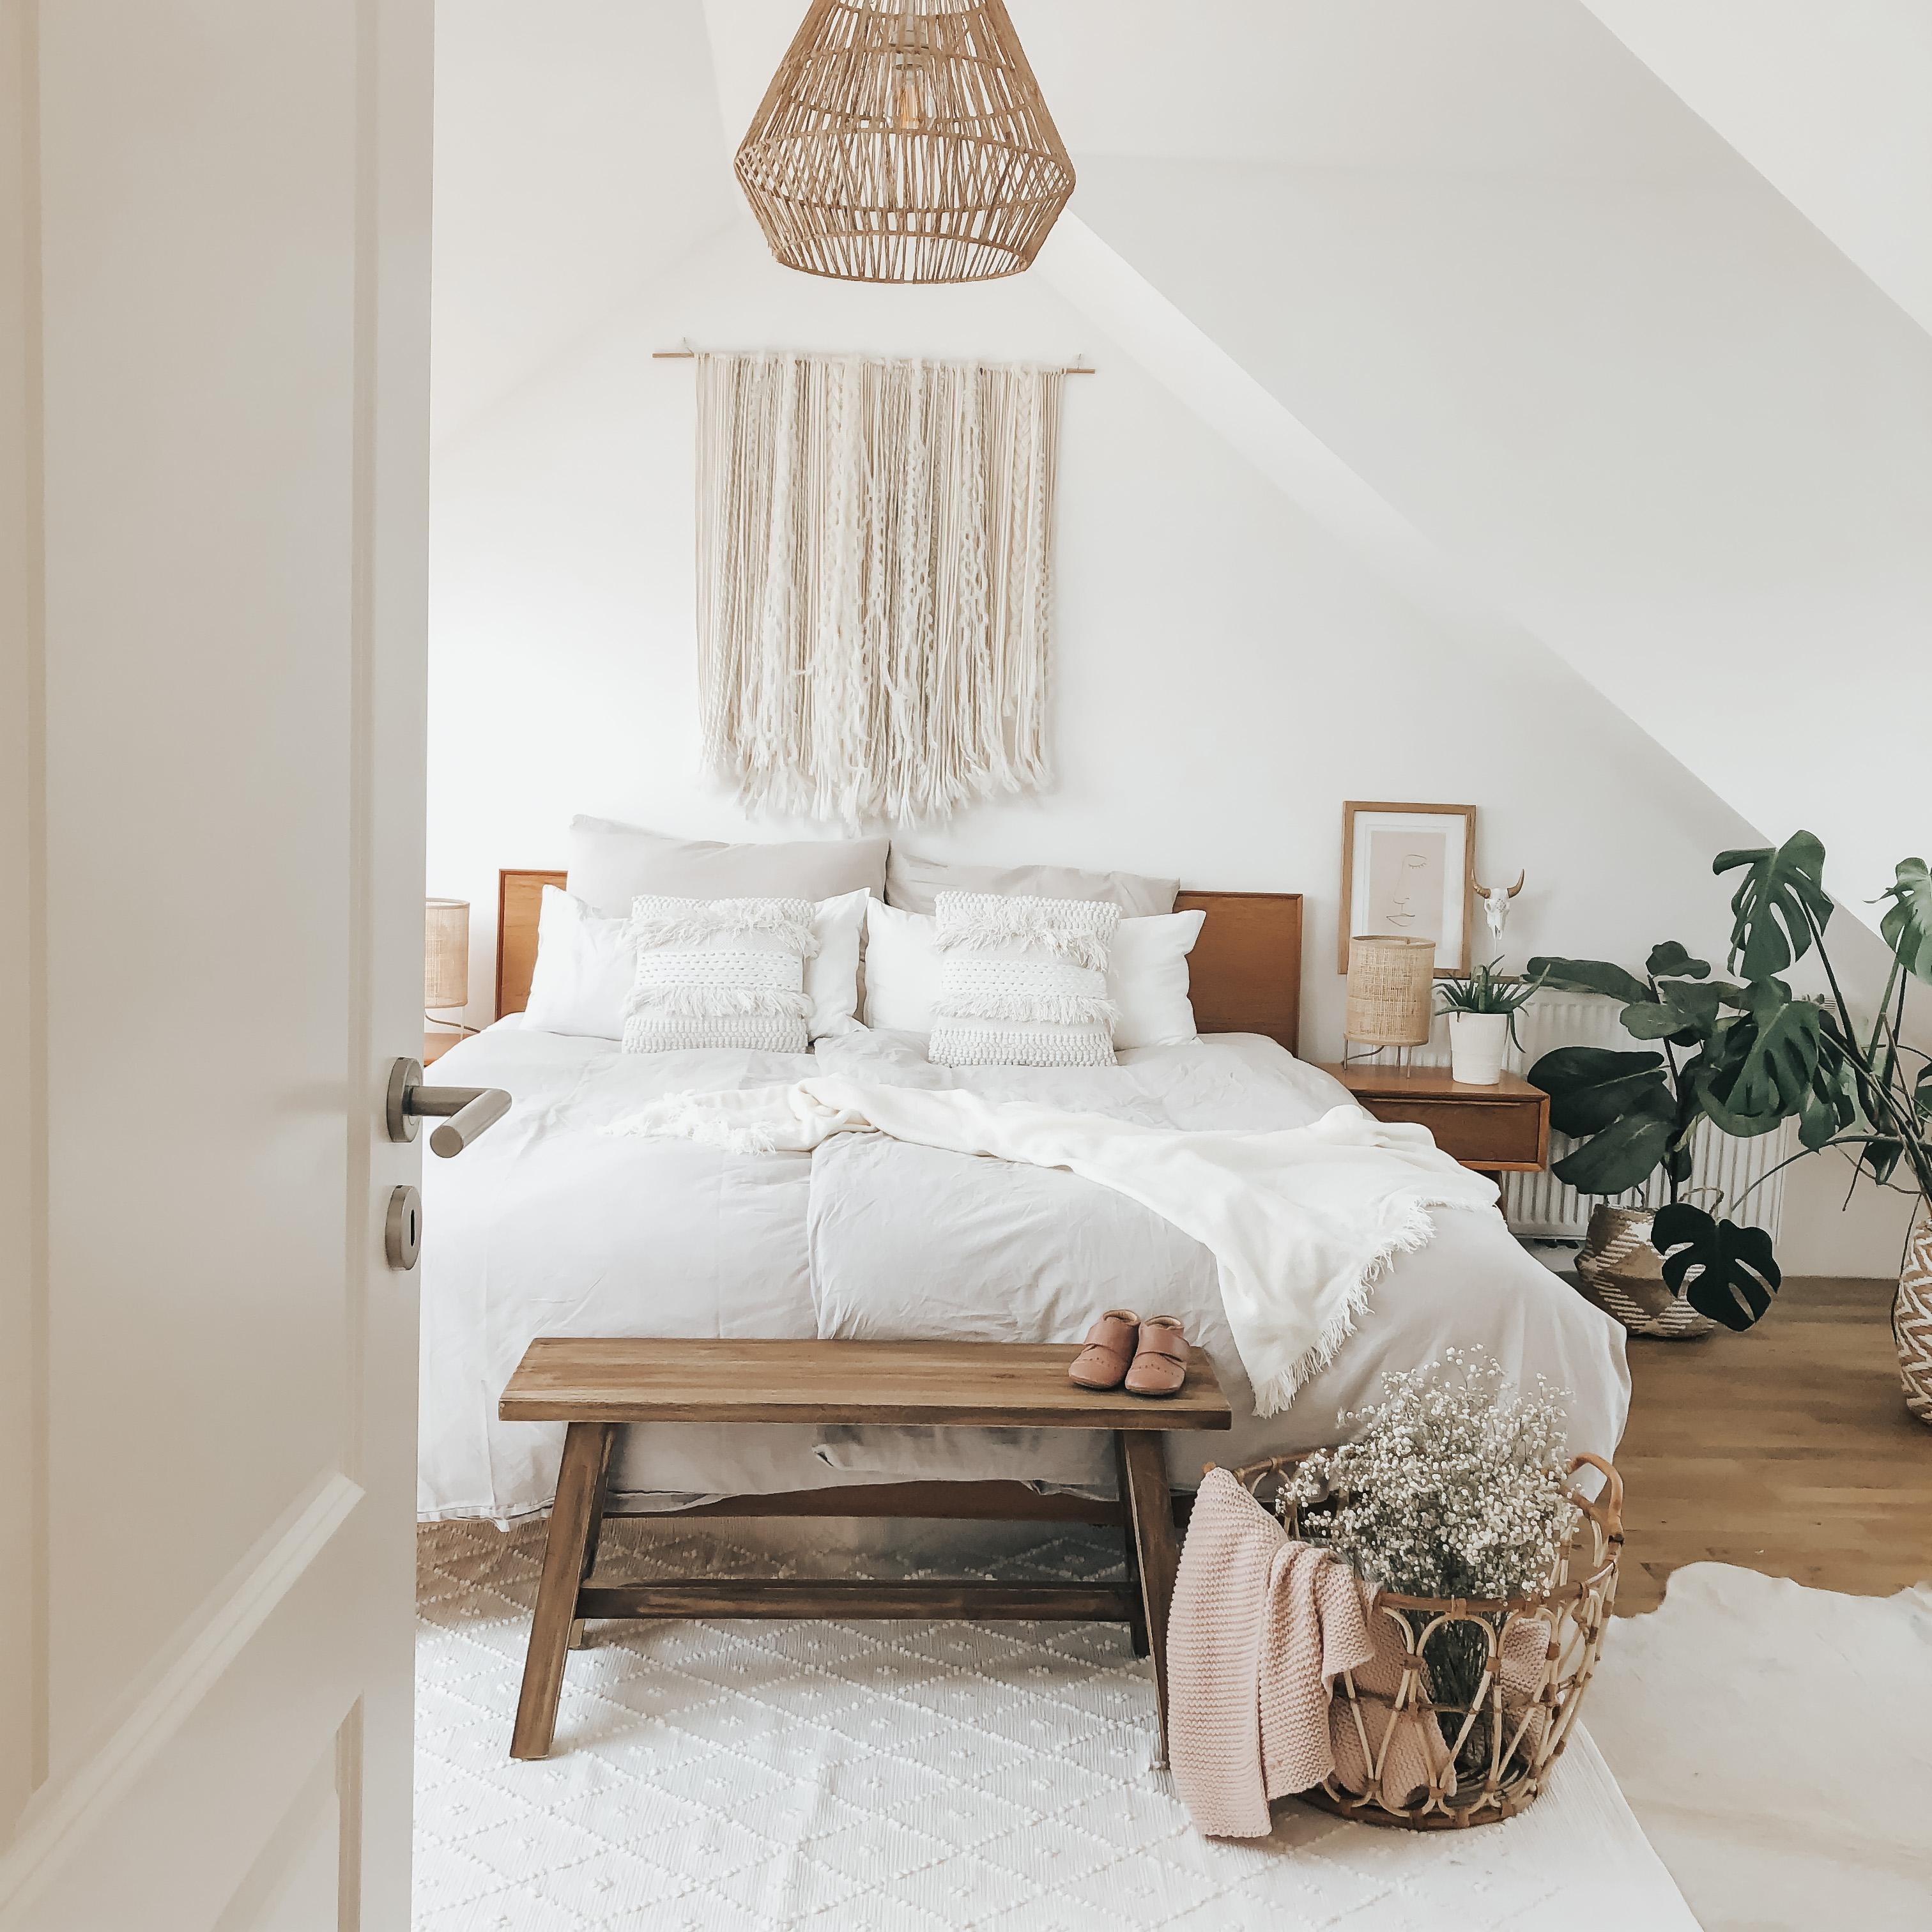 #schlafzimmer #bedroom #sunlight #dachboden #bohohome #boholiving #bohodecor #bett #cozyhome #wandbehang #couchliebt